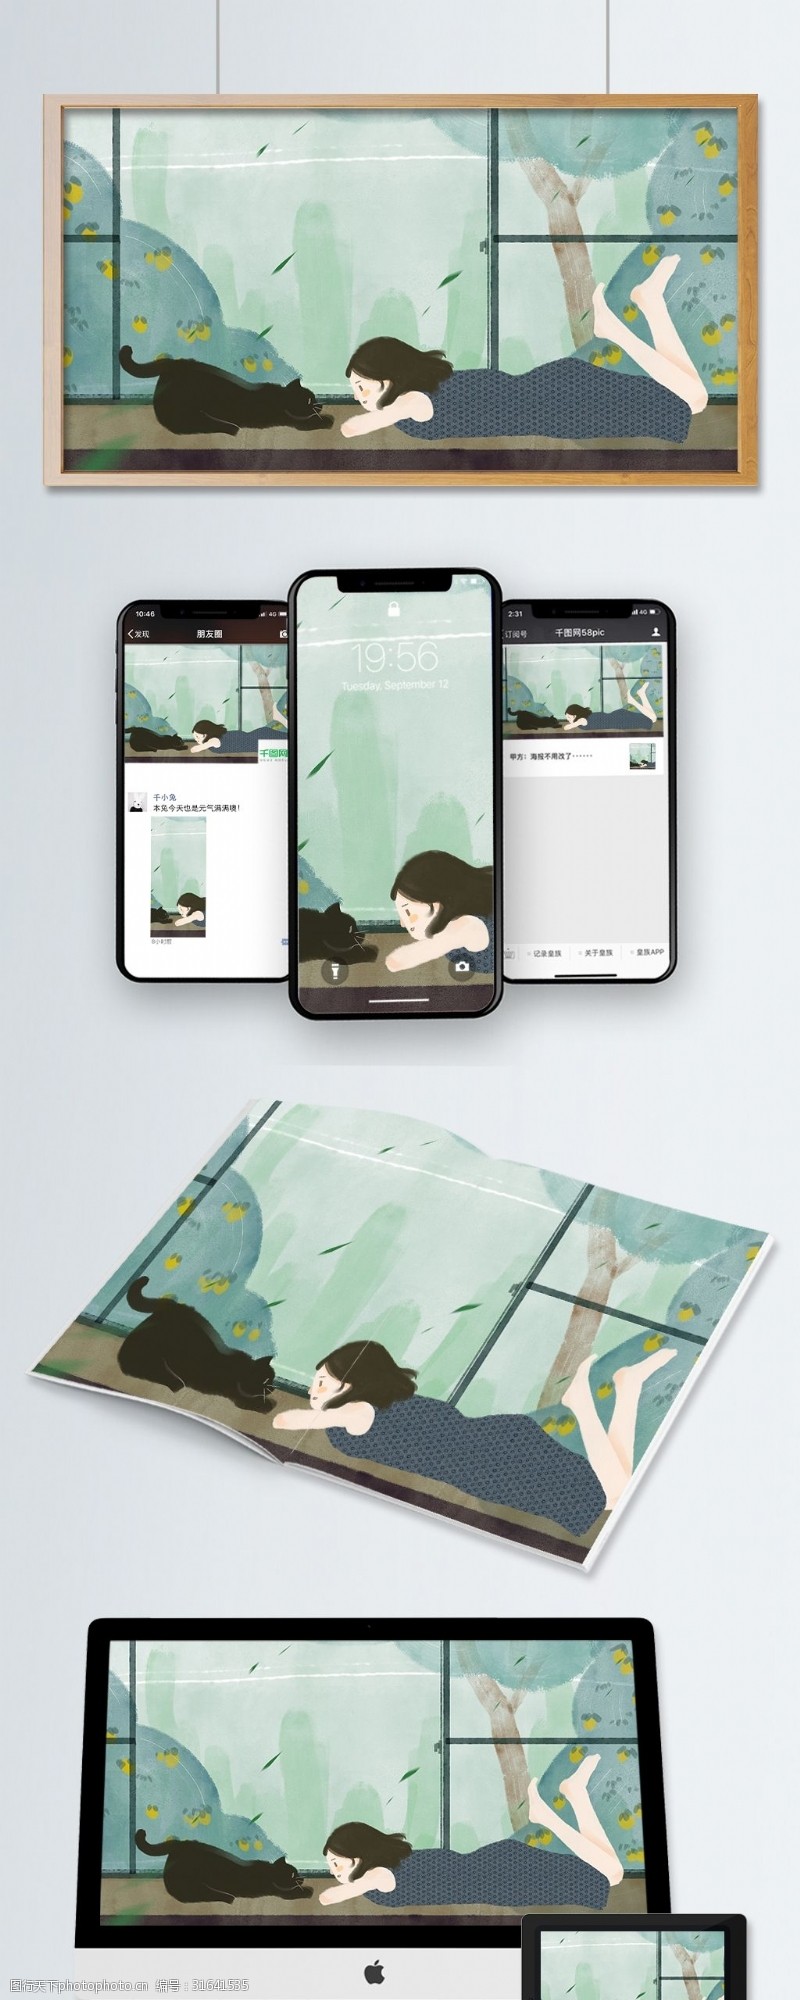 微博配图日式庭院少女和猫手绘插画